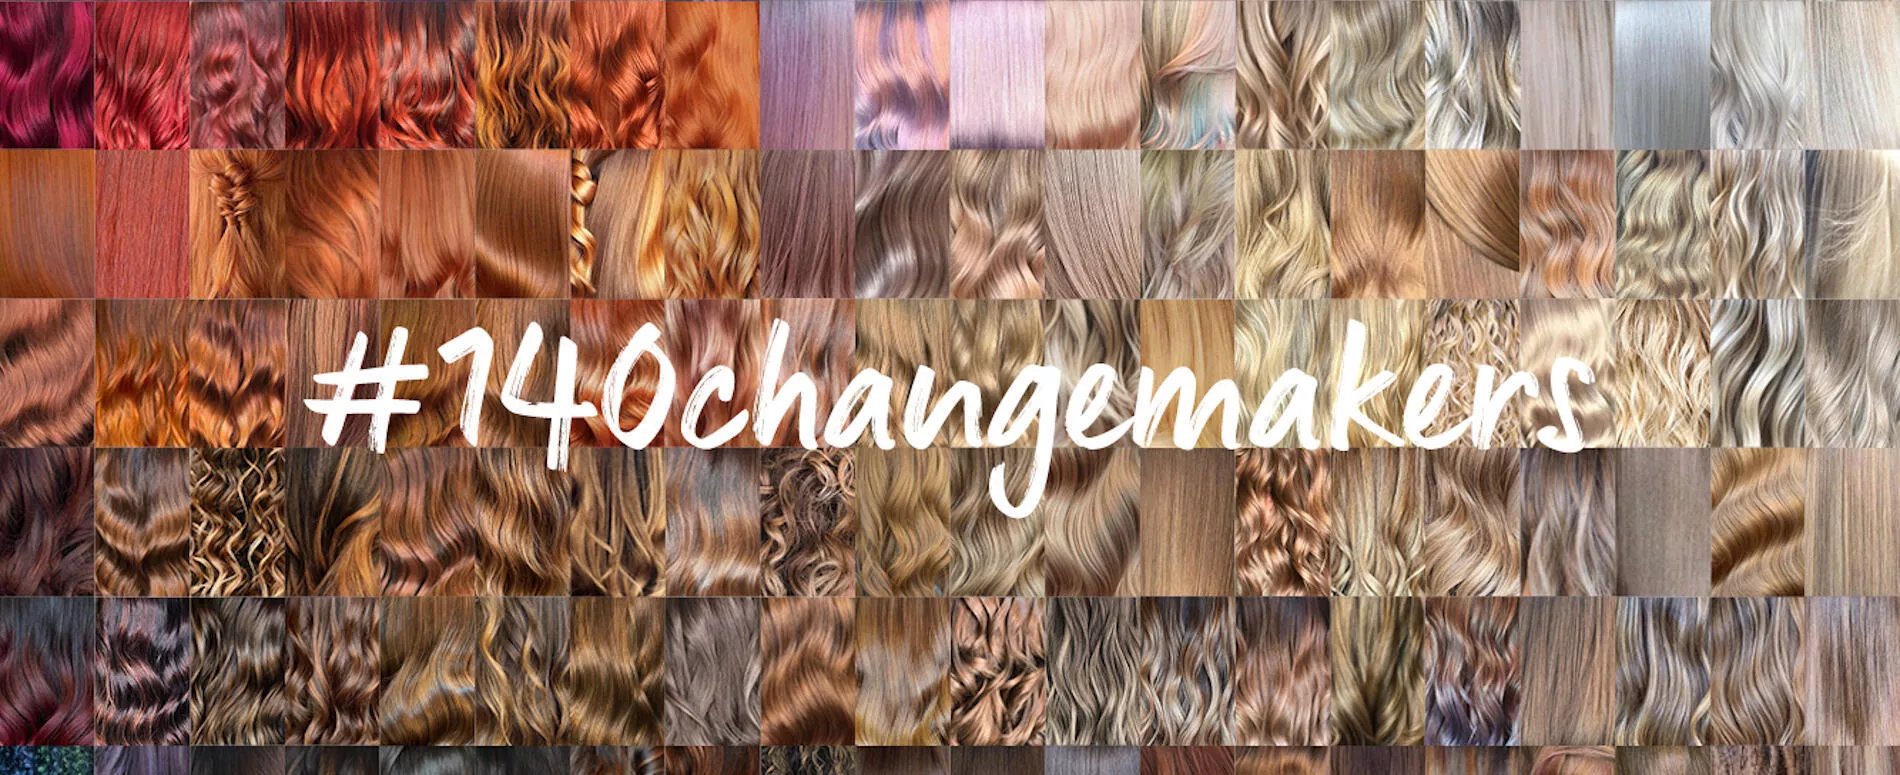 Collage de fptps de modelo con cabello morado oscuro siendo atendida por un peluquero wella